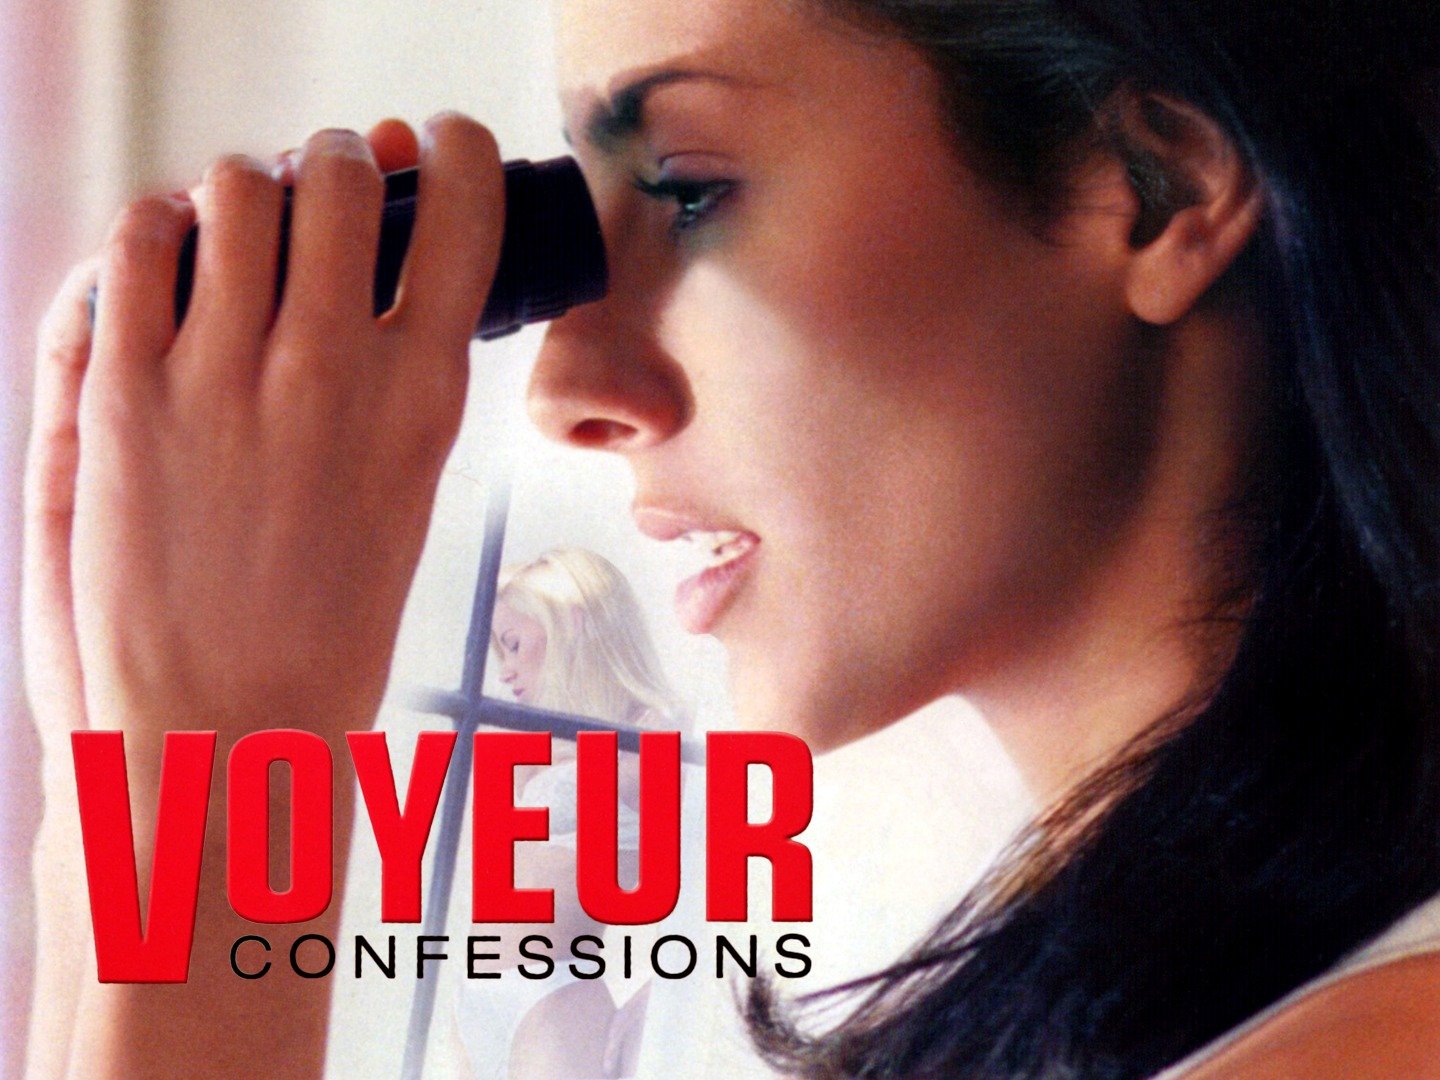 voyeur confessions 2001 torrent Porn Photos